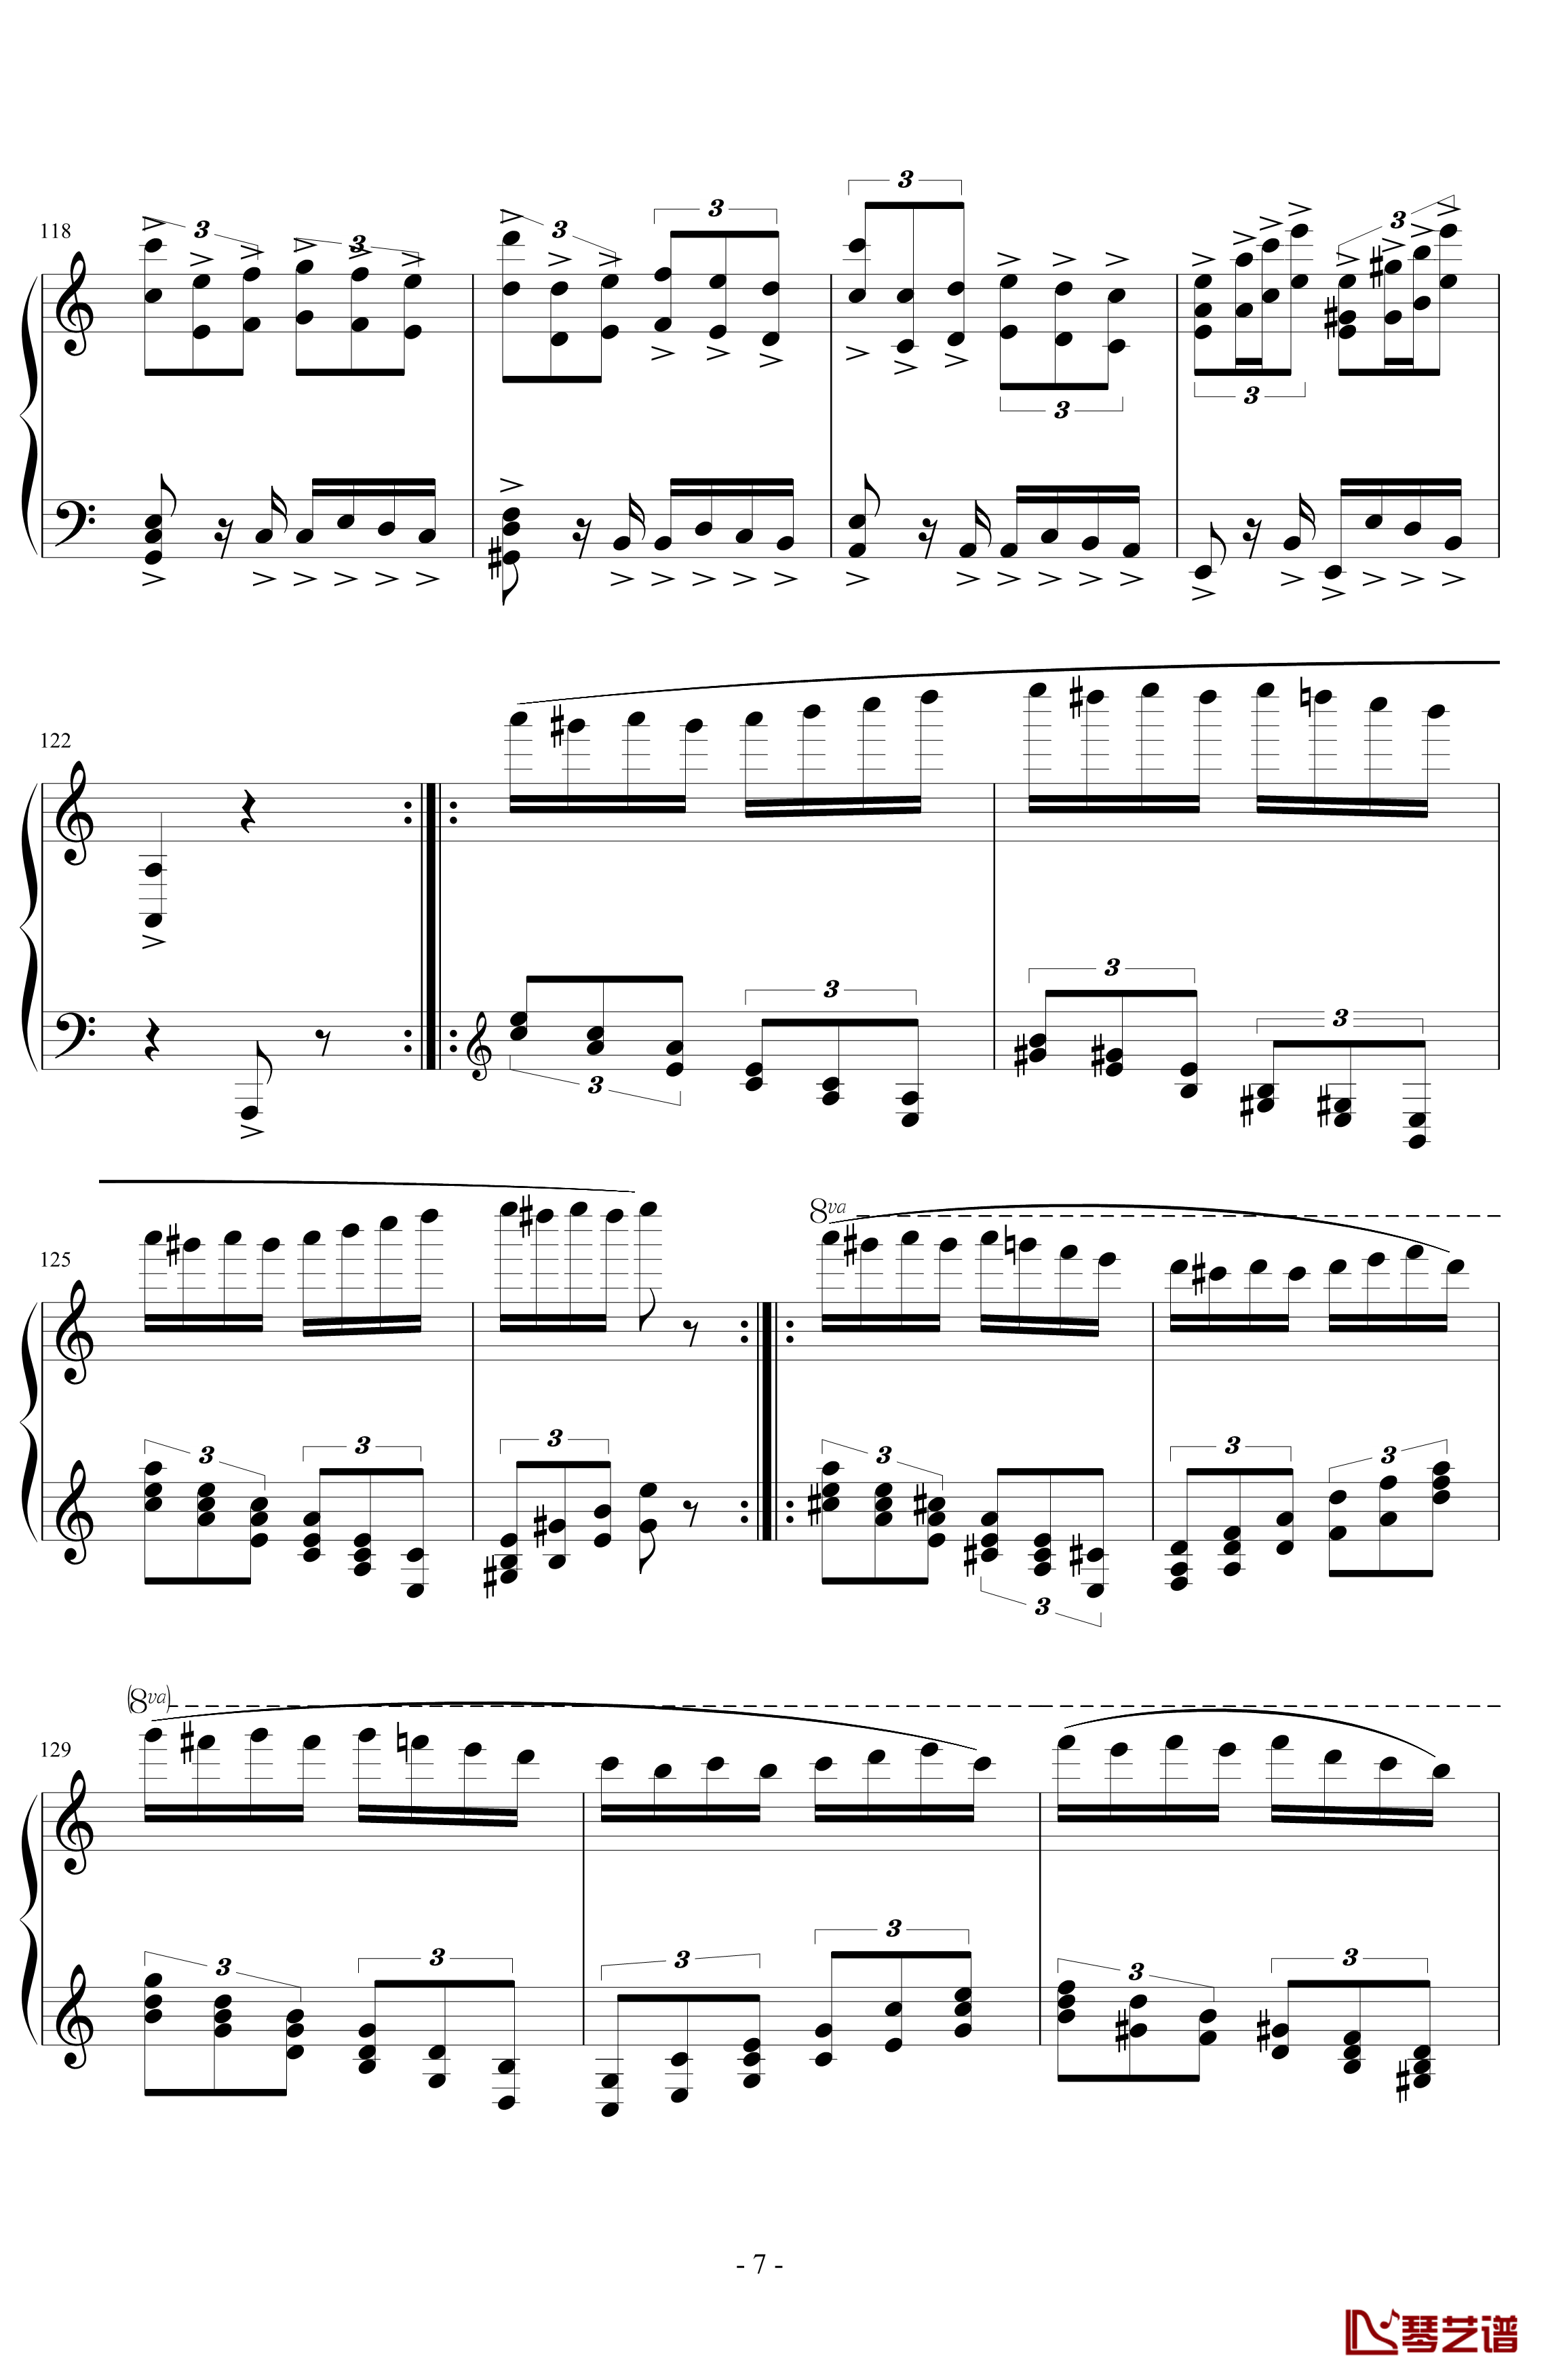 经典主题变奏曲钢琴谱-丁晓峰7